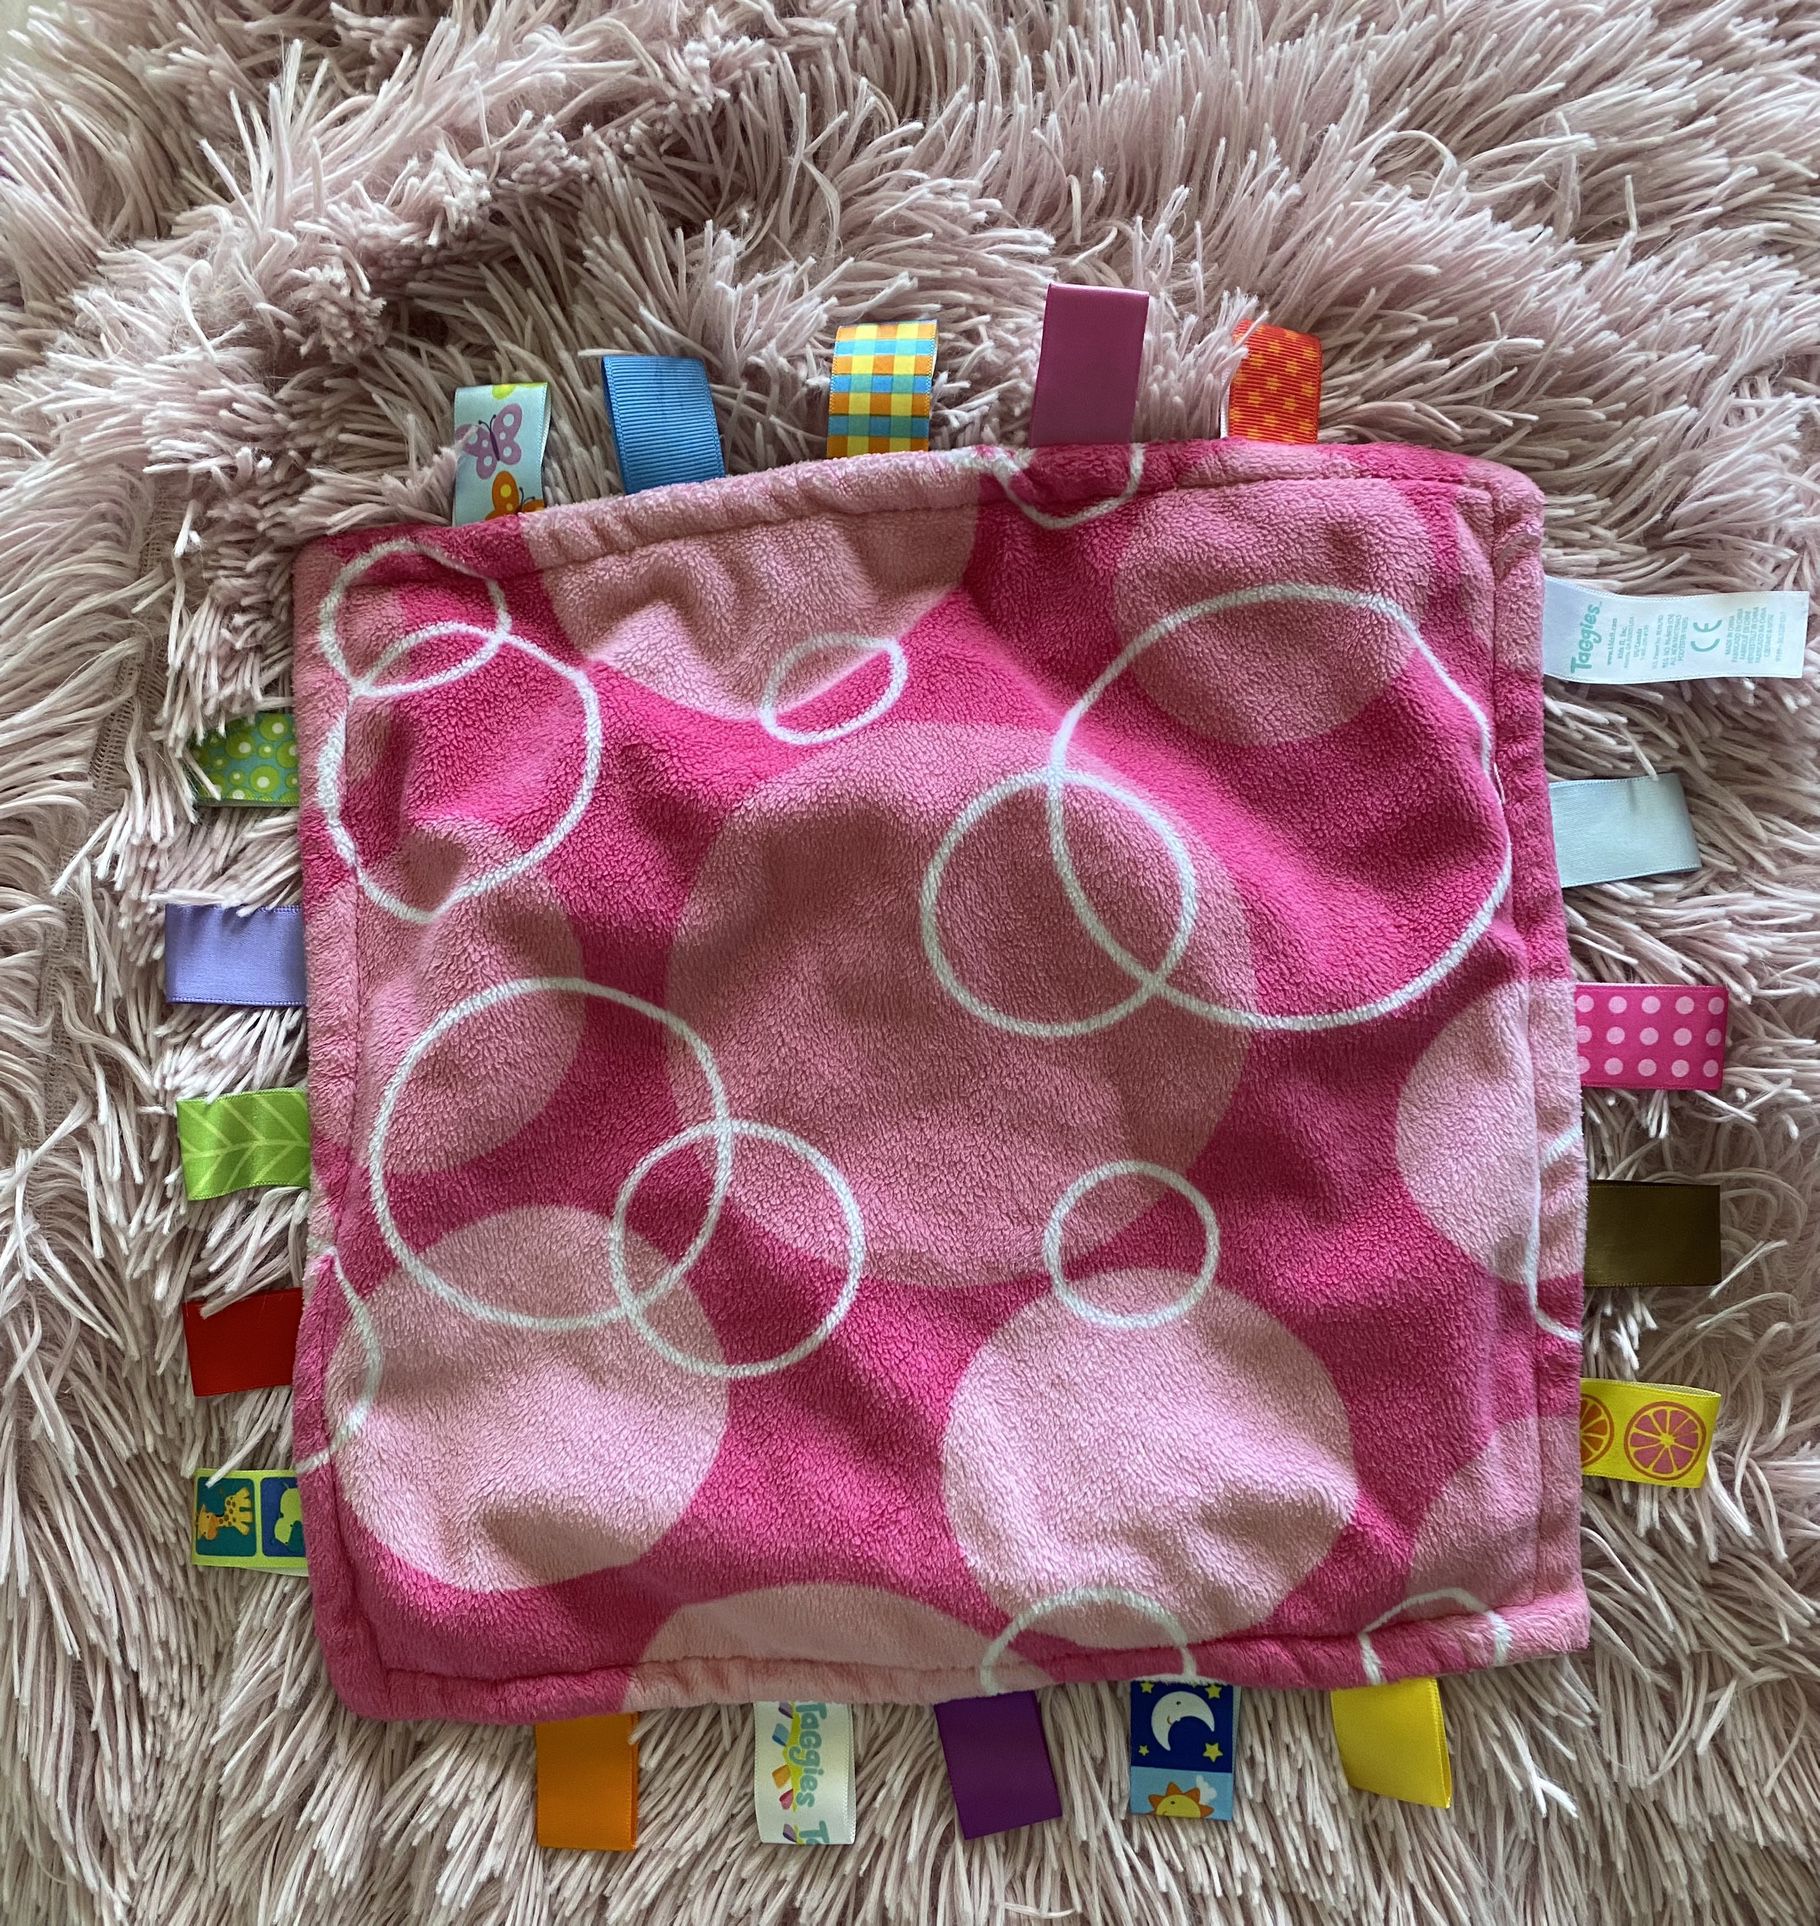 Toddler Soothing Blanket - Baby Teething Cloth Blanket - Baby Security Blanket